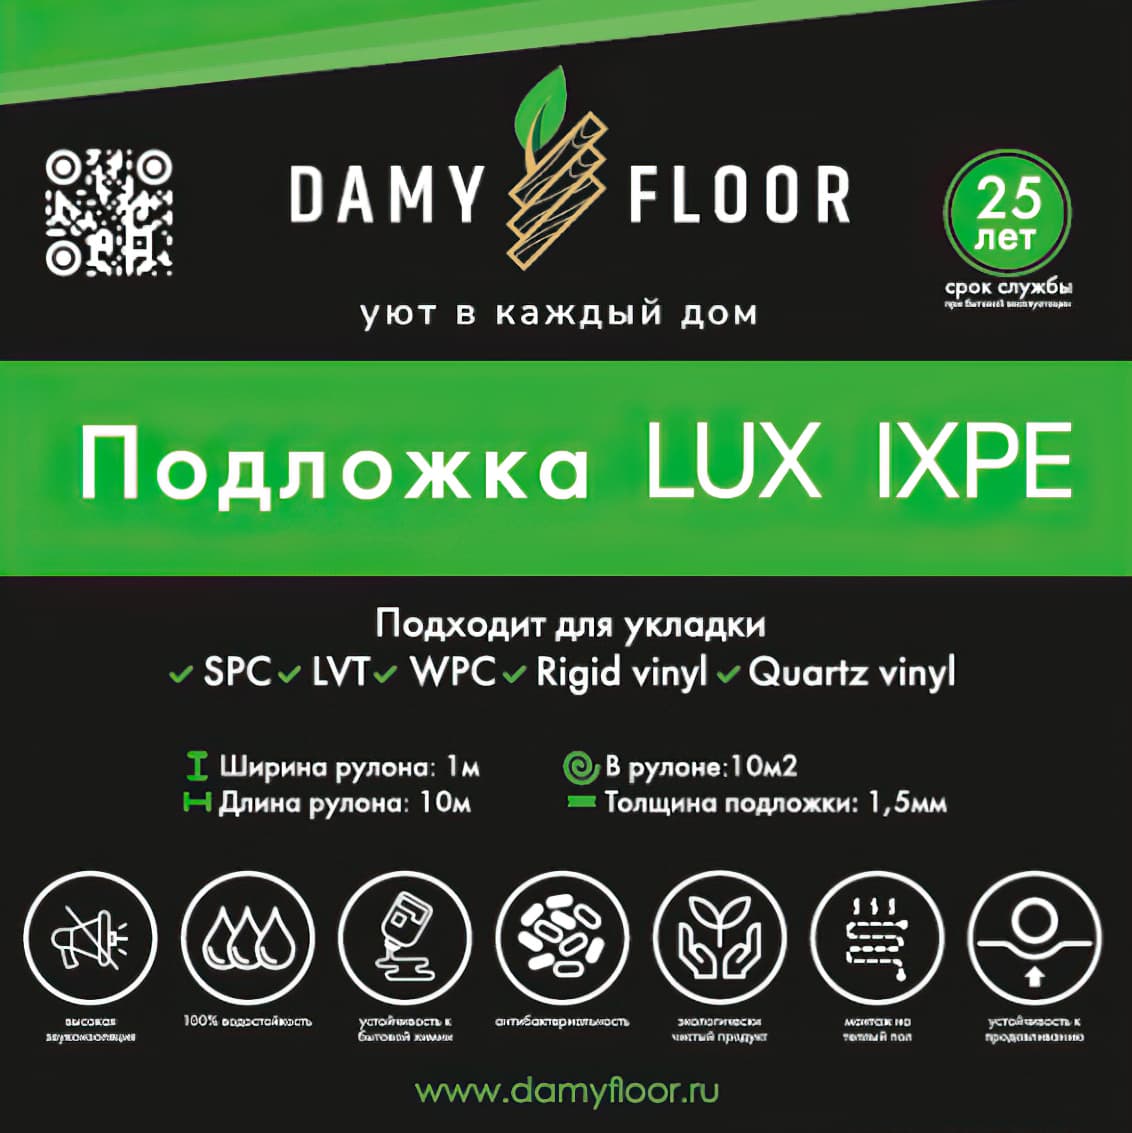 Рулонная подложка для SPC и LVT покрытий Damy Floor Lux IXPE